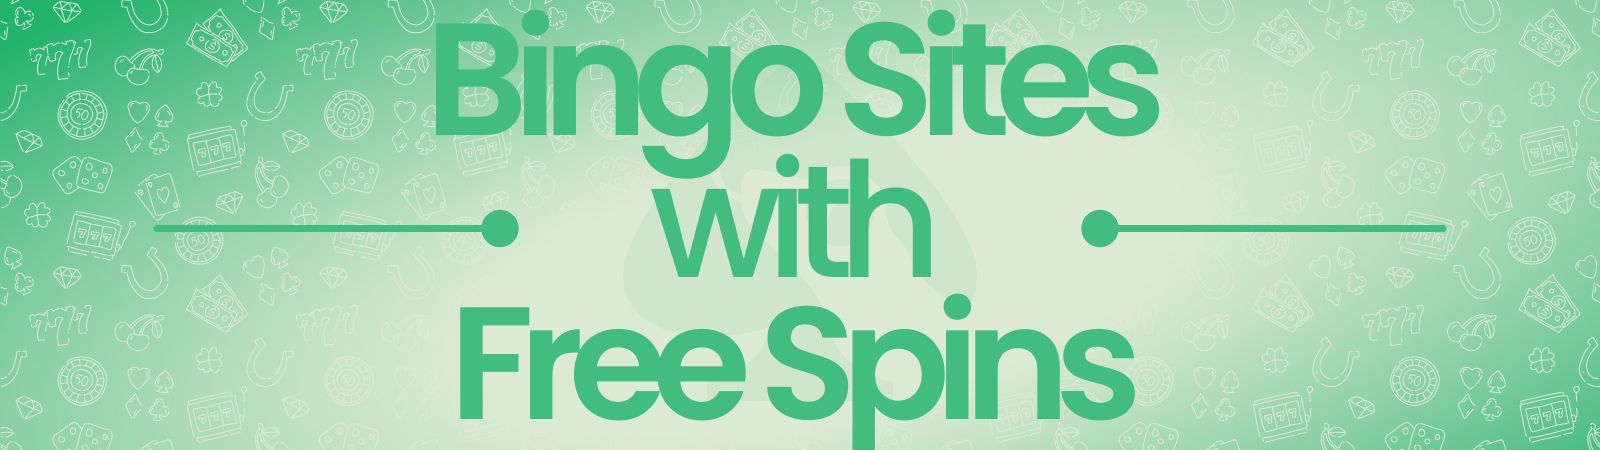 best bingo sites free spins uk